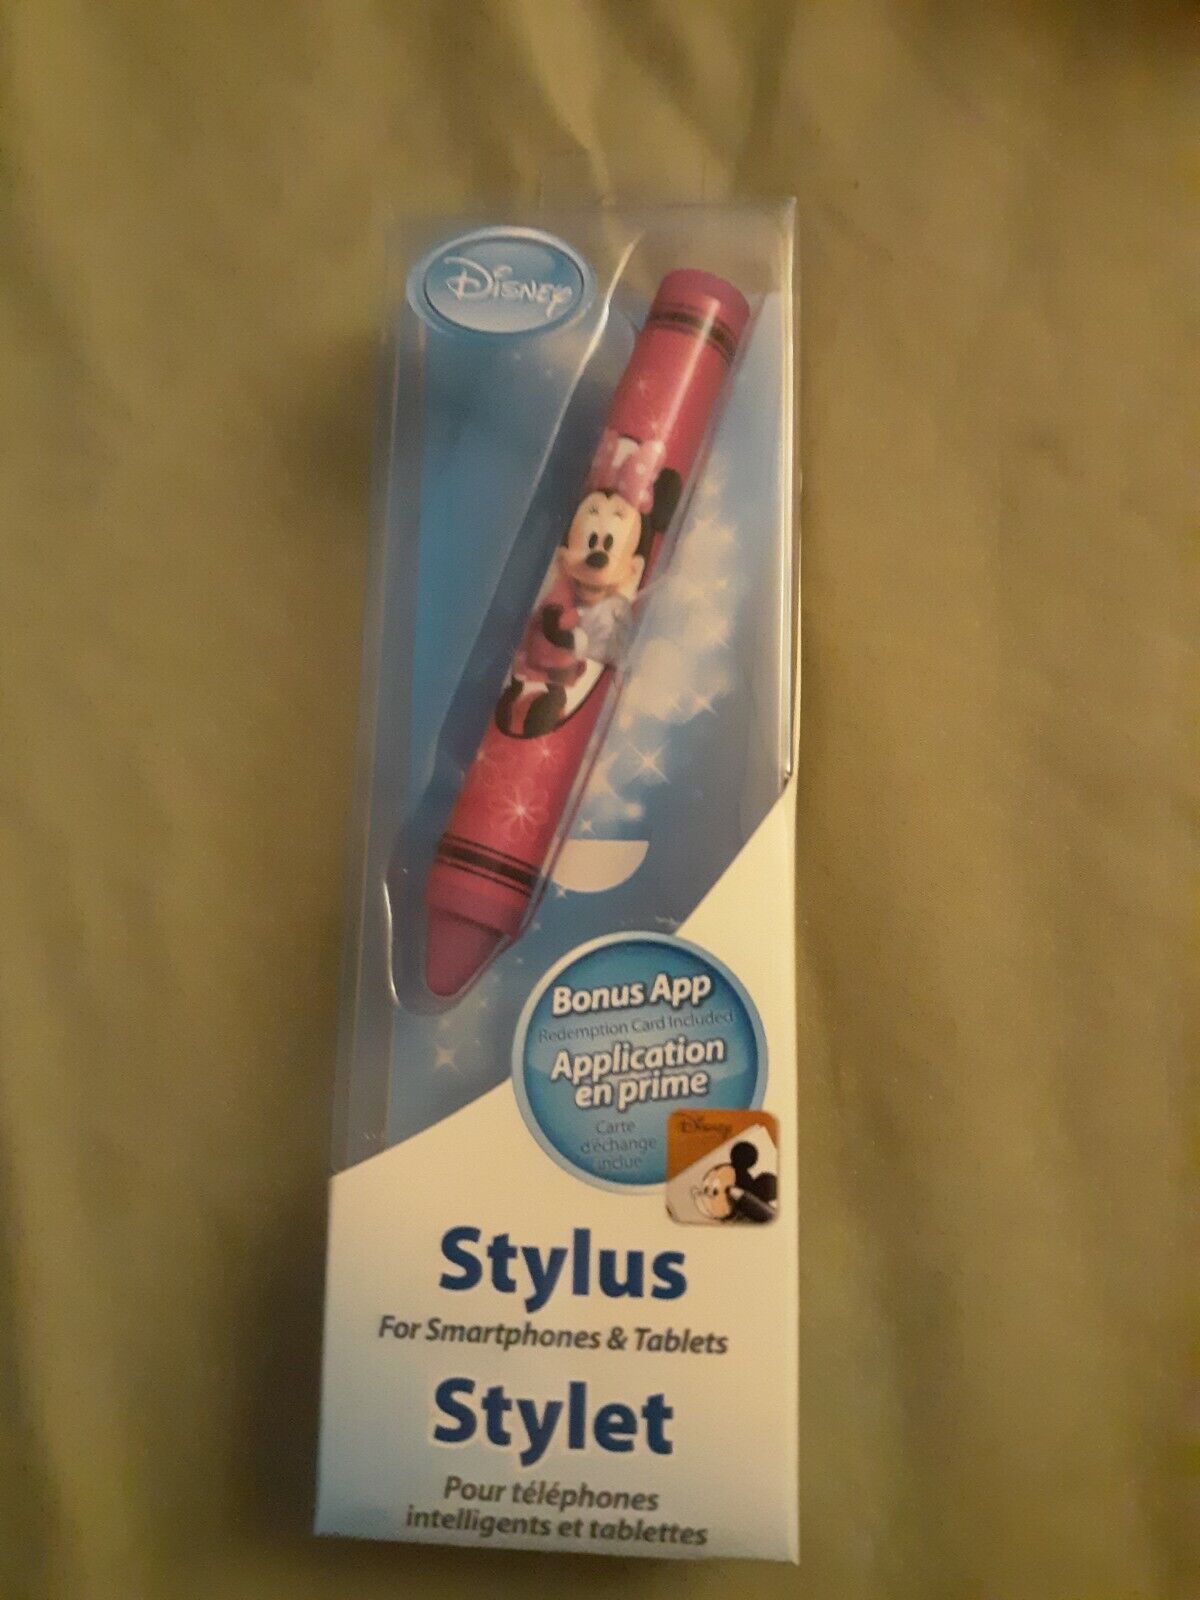 Disney Stylus eKids Pen/Pencil Smartphones & Tablets Minnie Mouse + App